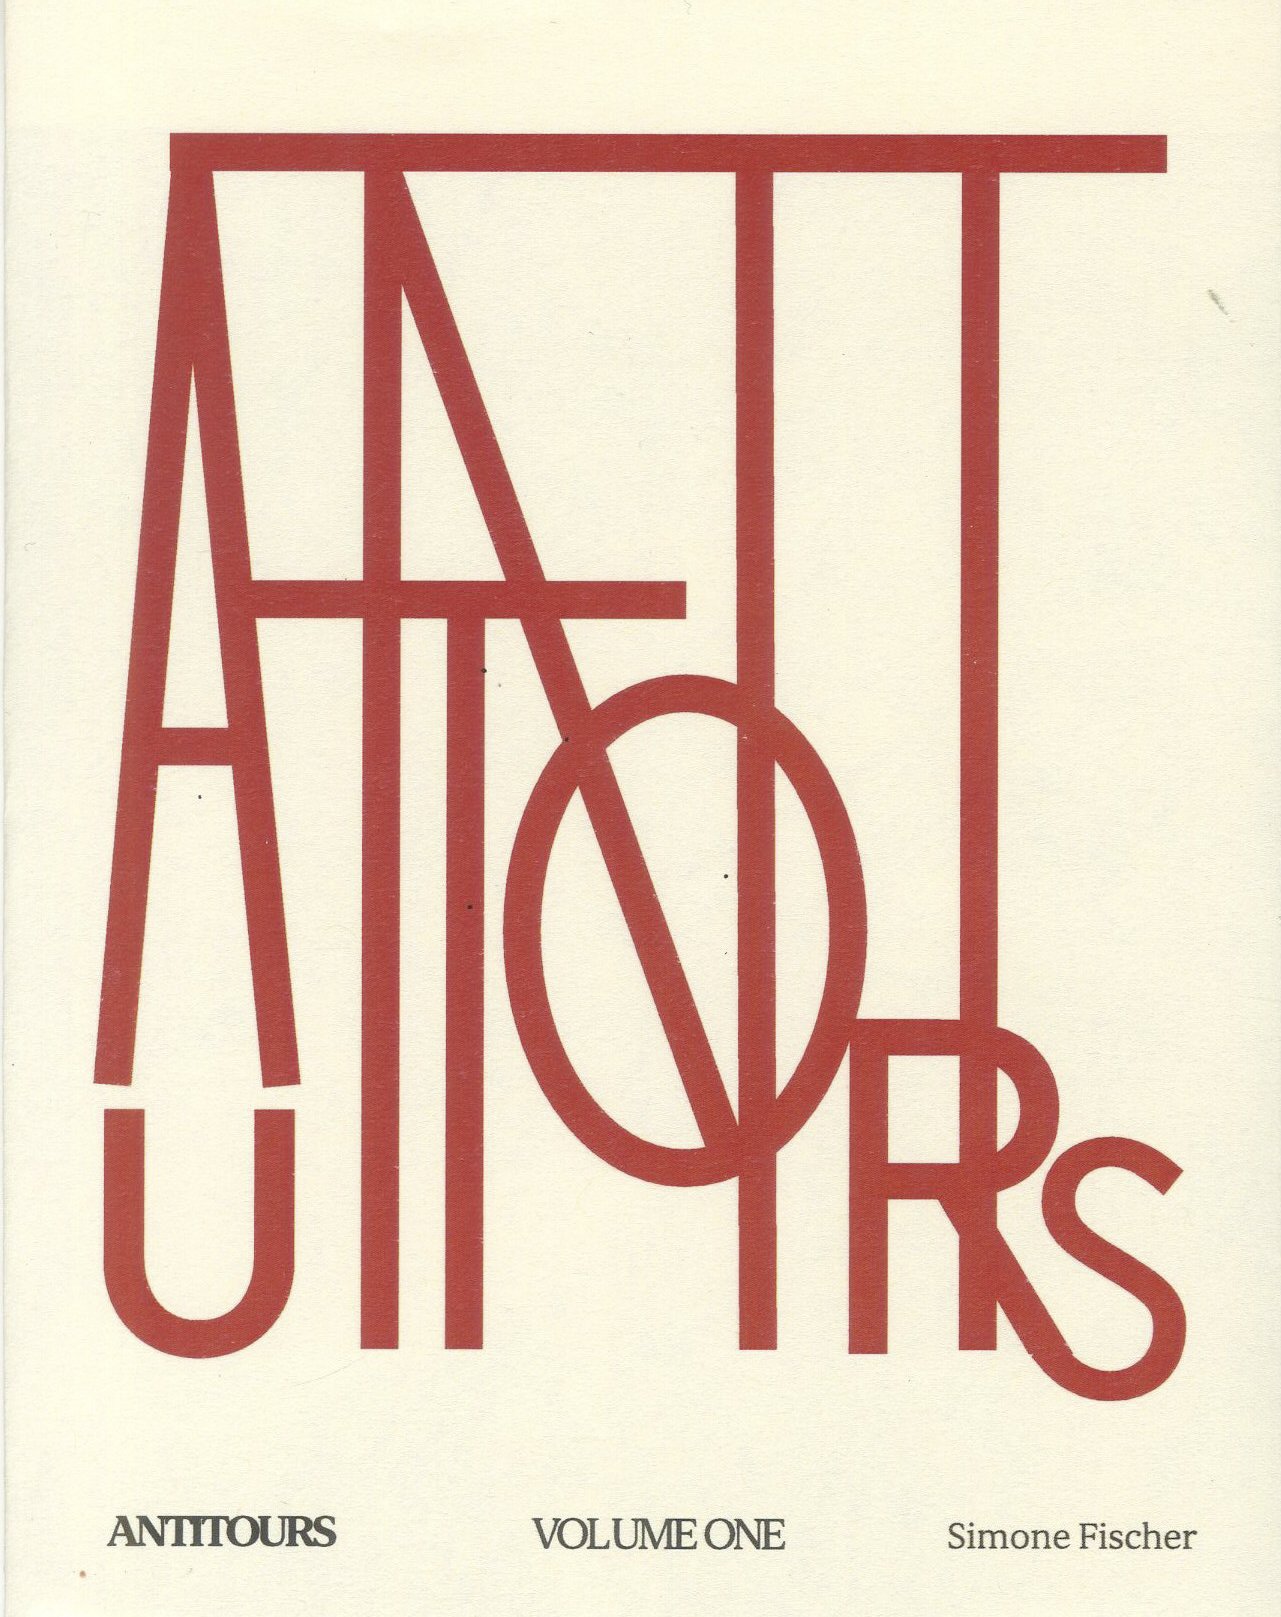 ANTITOURS publication design for artist Simone Fischer, 2021